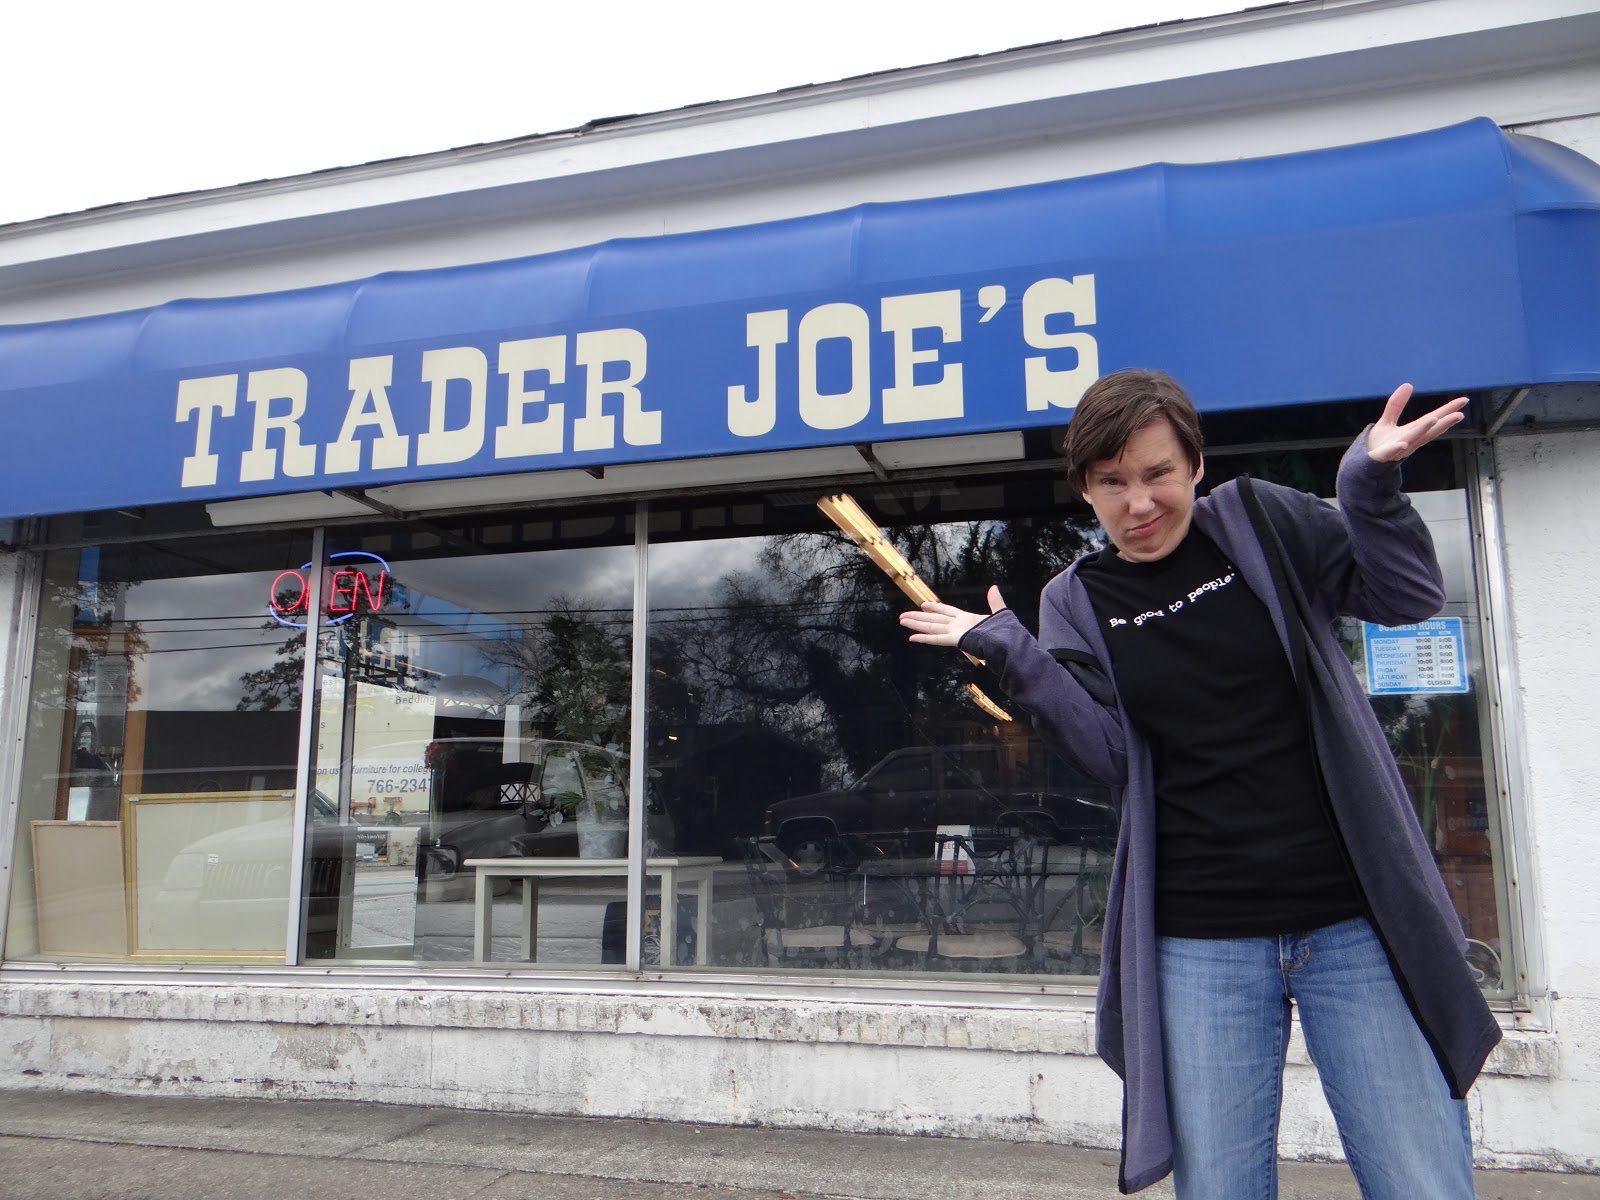 Trader Joe's 365: Fake Trader Joe's, Mt. Pleasant, SC Trader Joe's, and